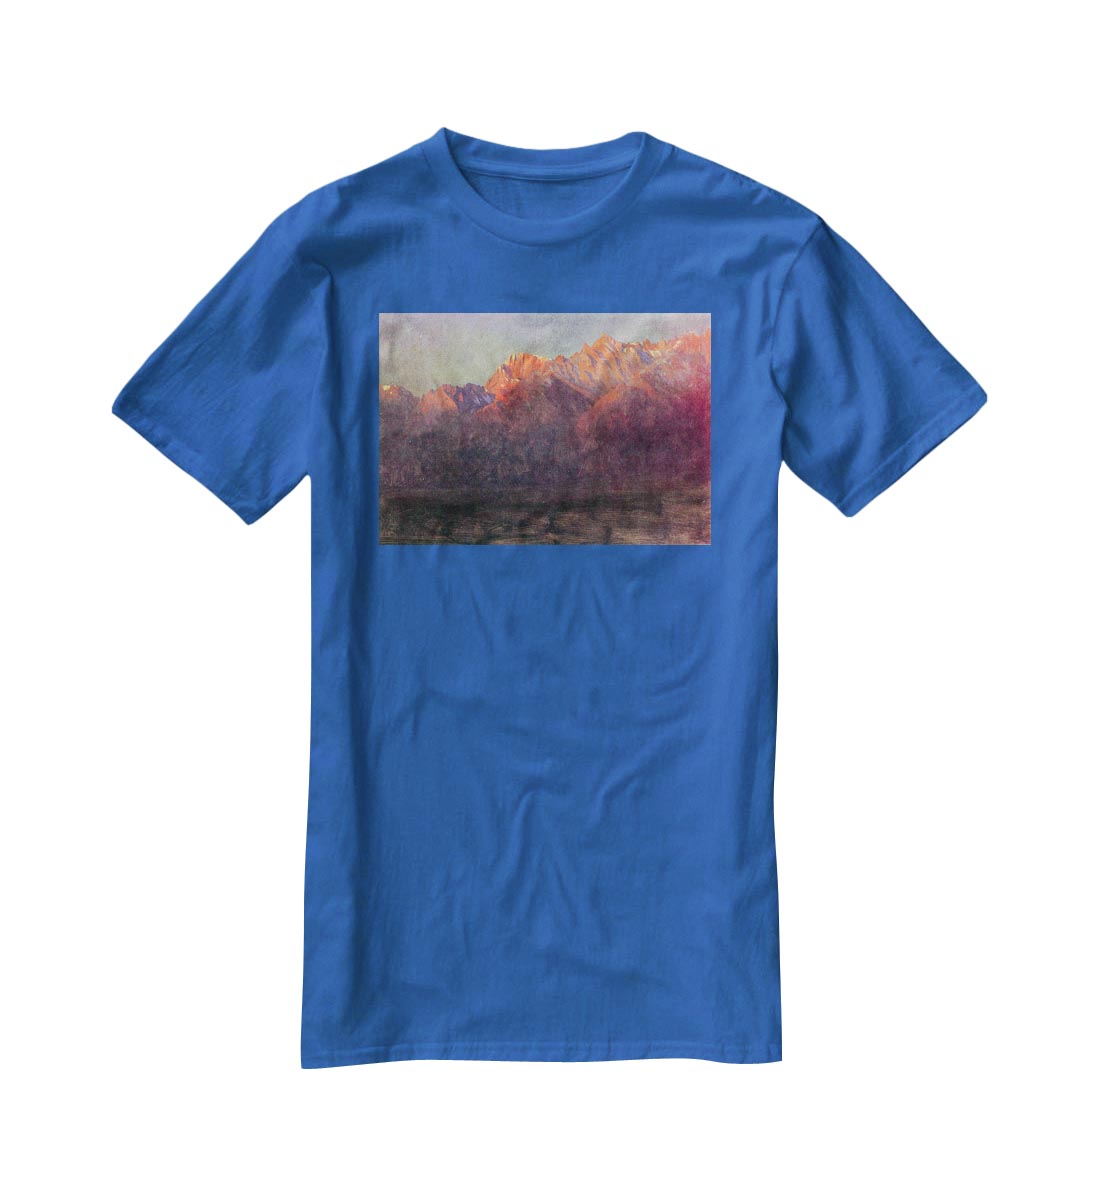 Sunrise in the Sierras by Bierstadt T-Shirt - Canvas Art Rocks - 2